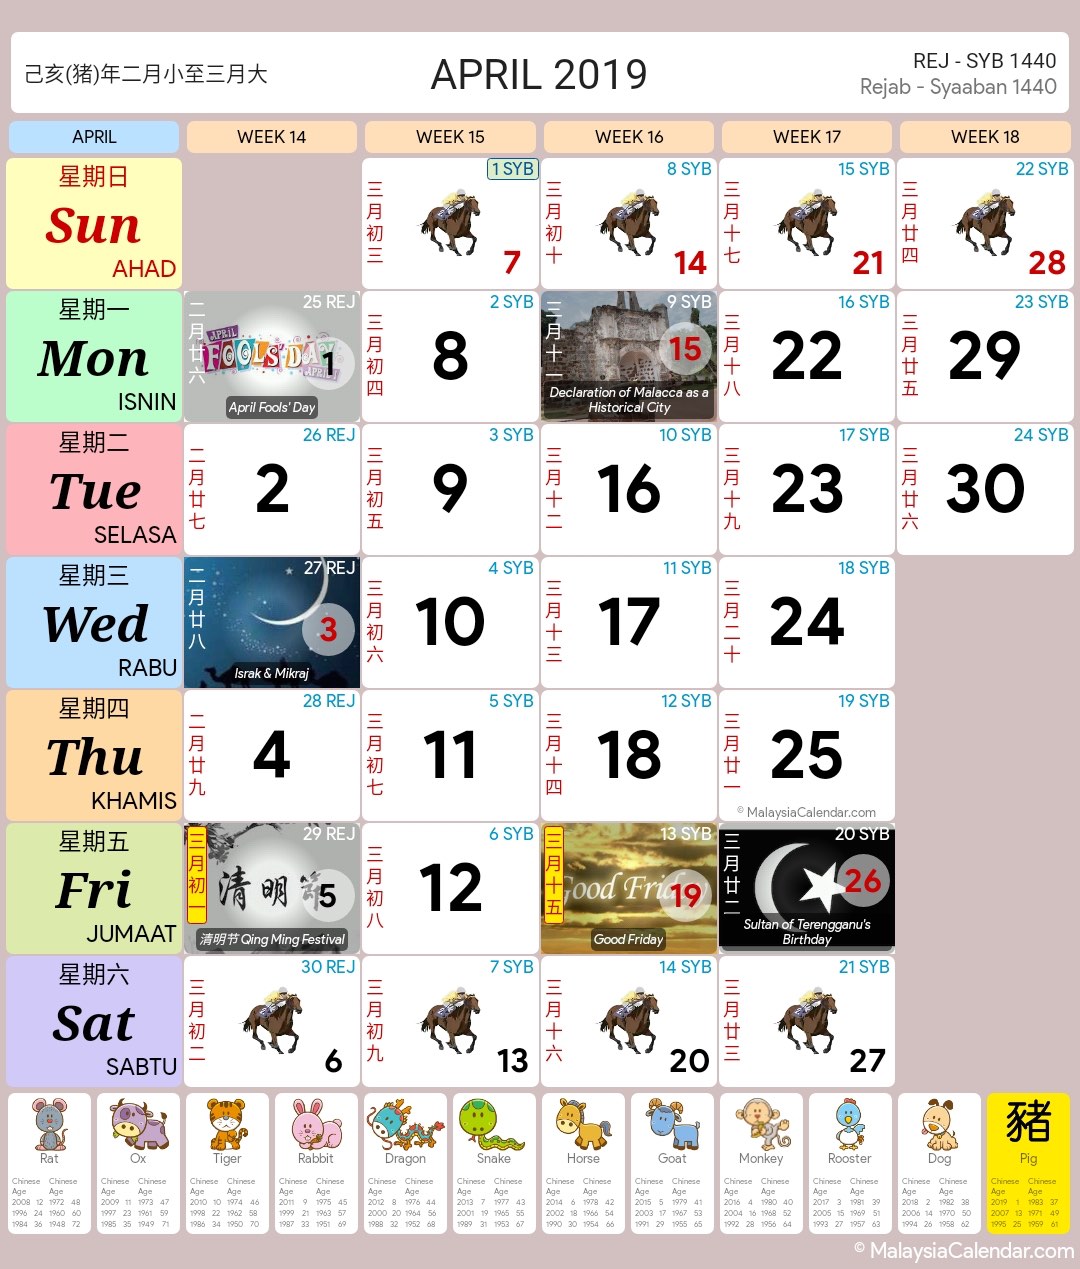 Kalendar Malaysia 2019 (Cuti Sekolah) - Kalendar Malaysia